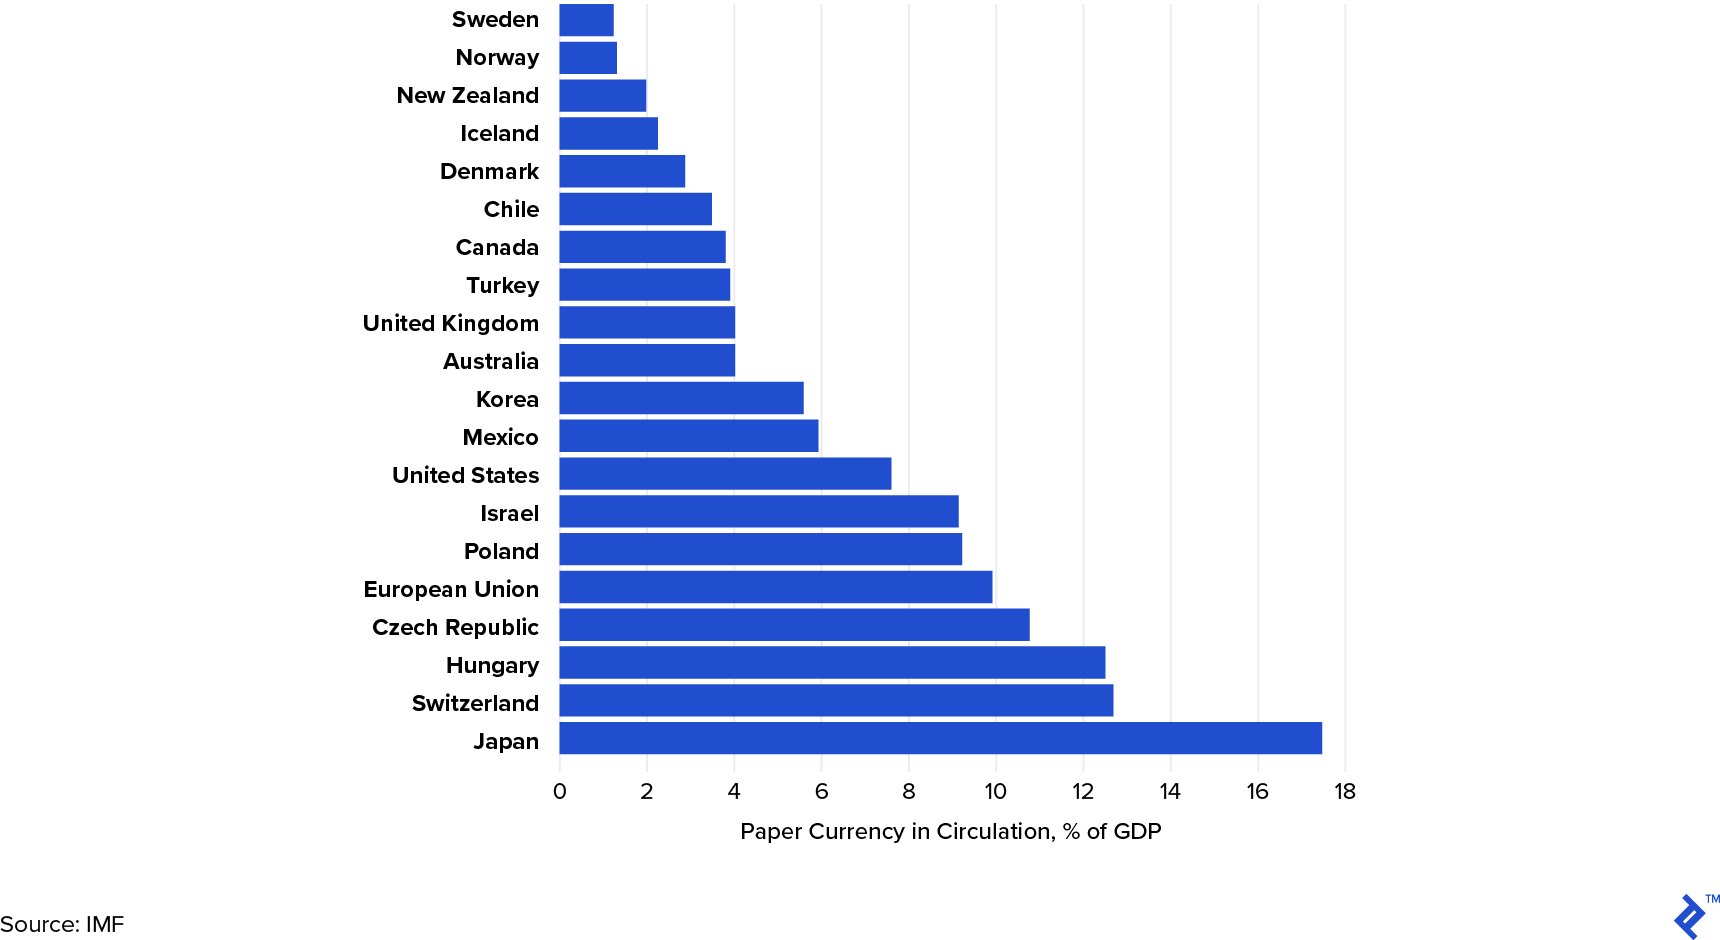 主要经济体纸币使用百分比（2017年）。